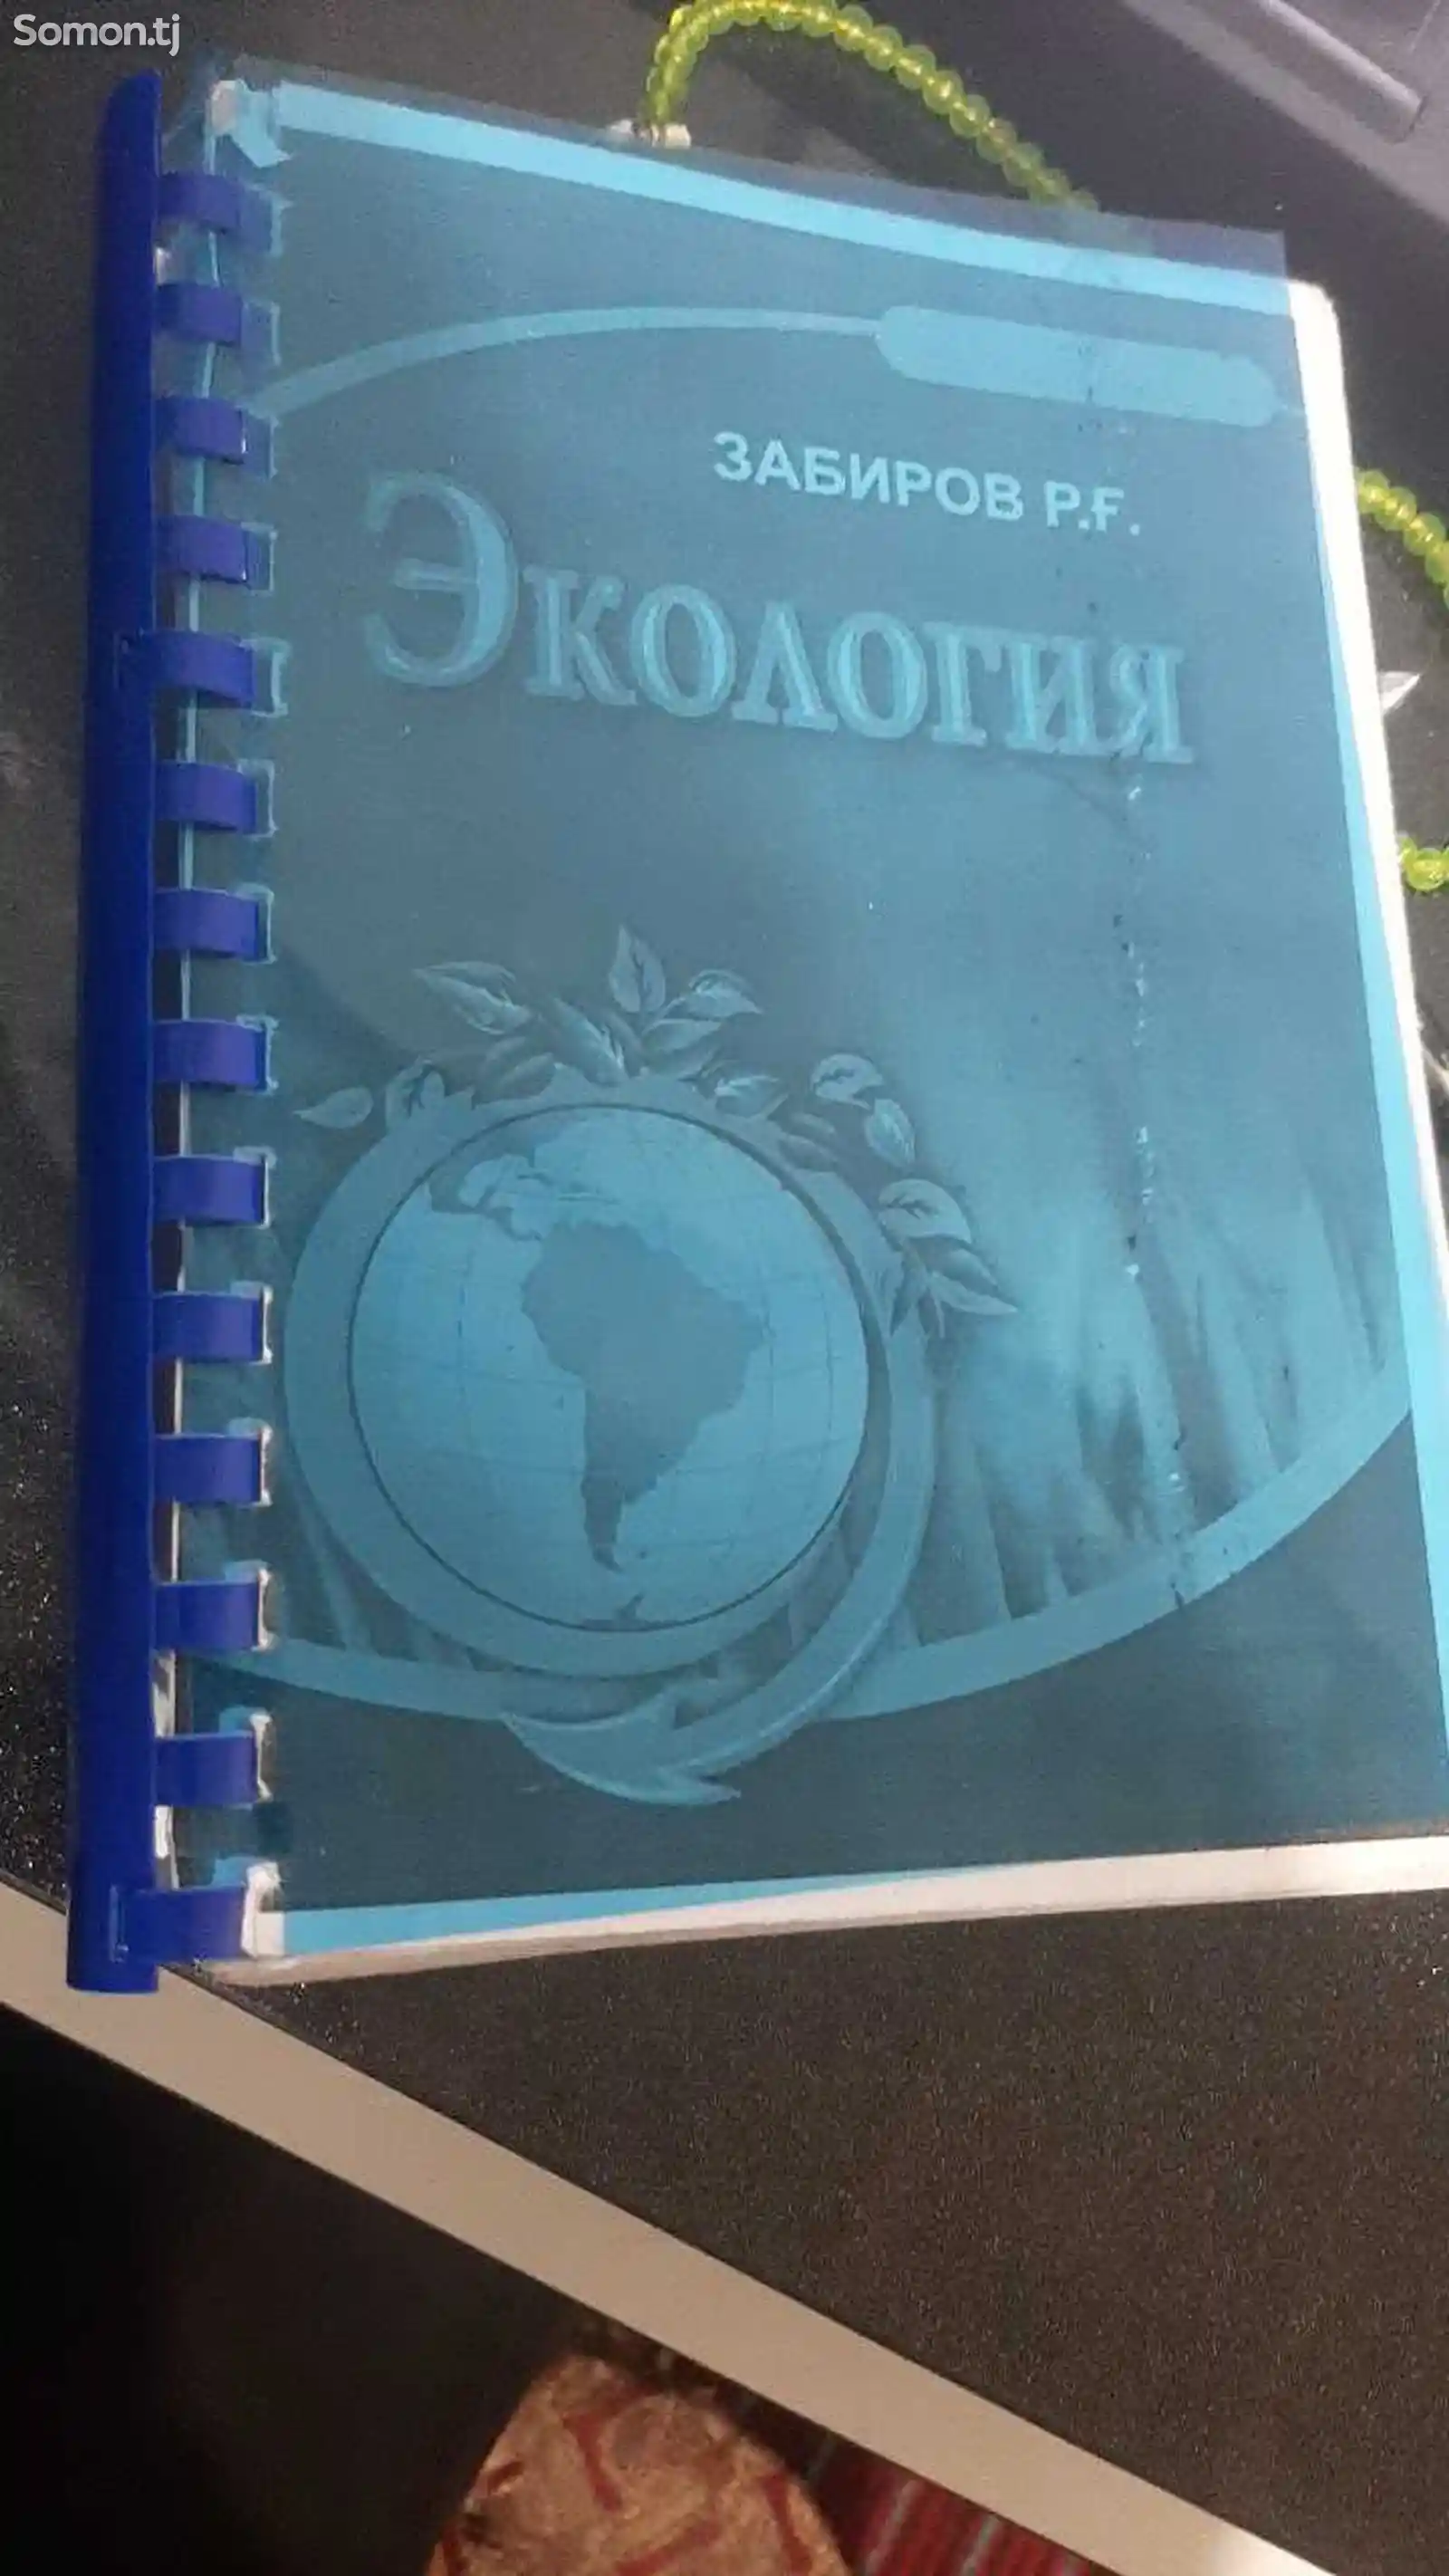 Книга Экология Забиров Р.Ғ-1